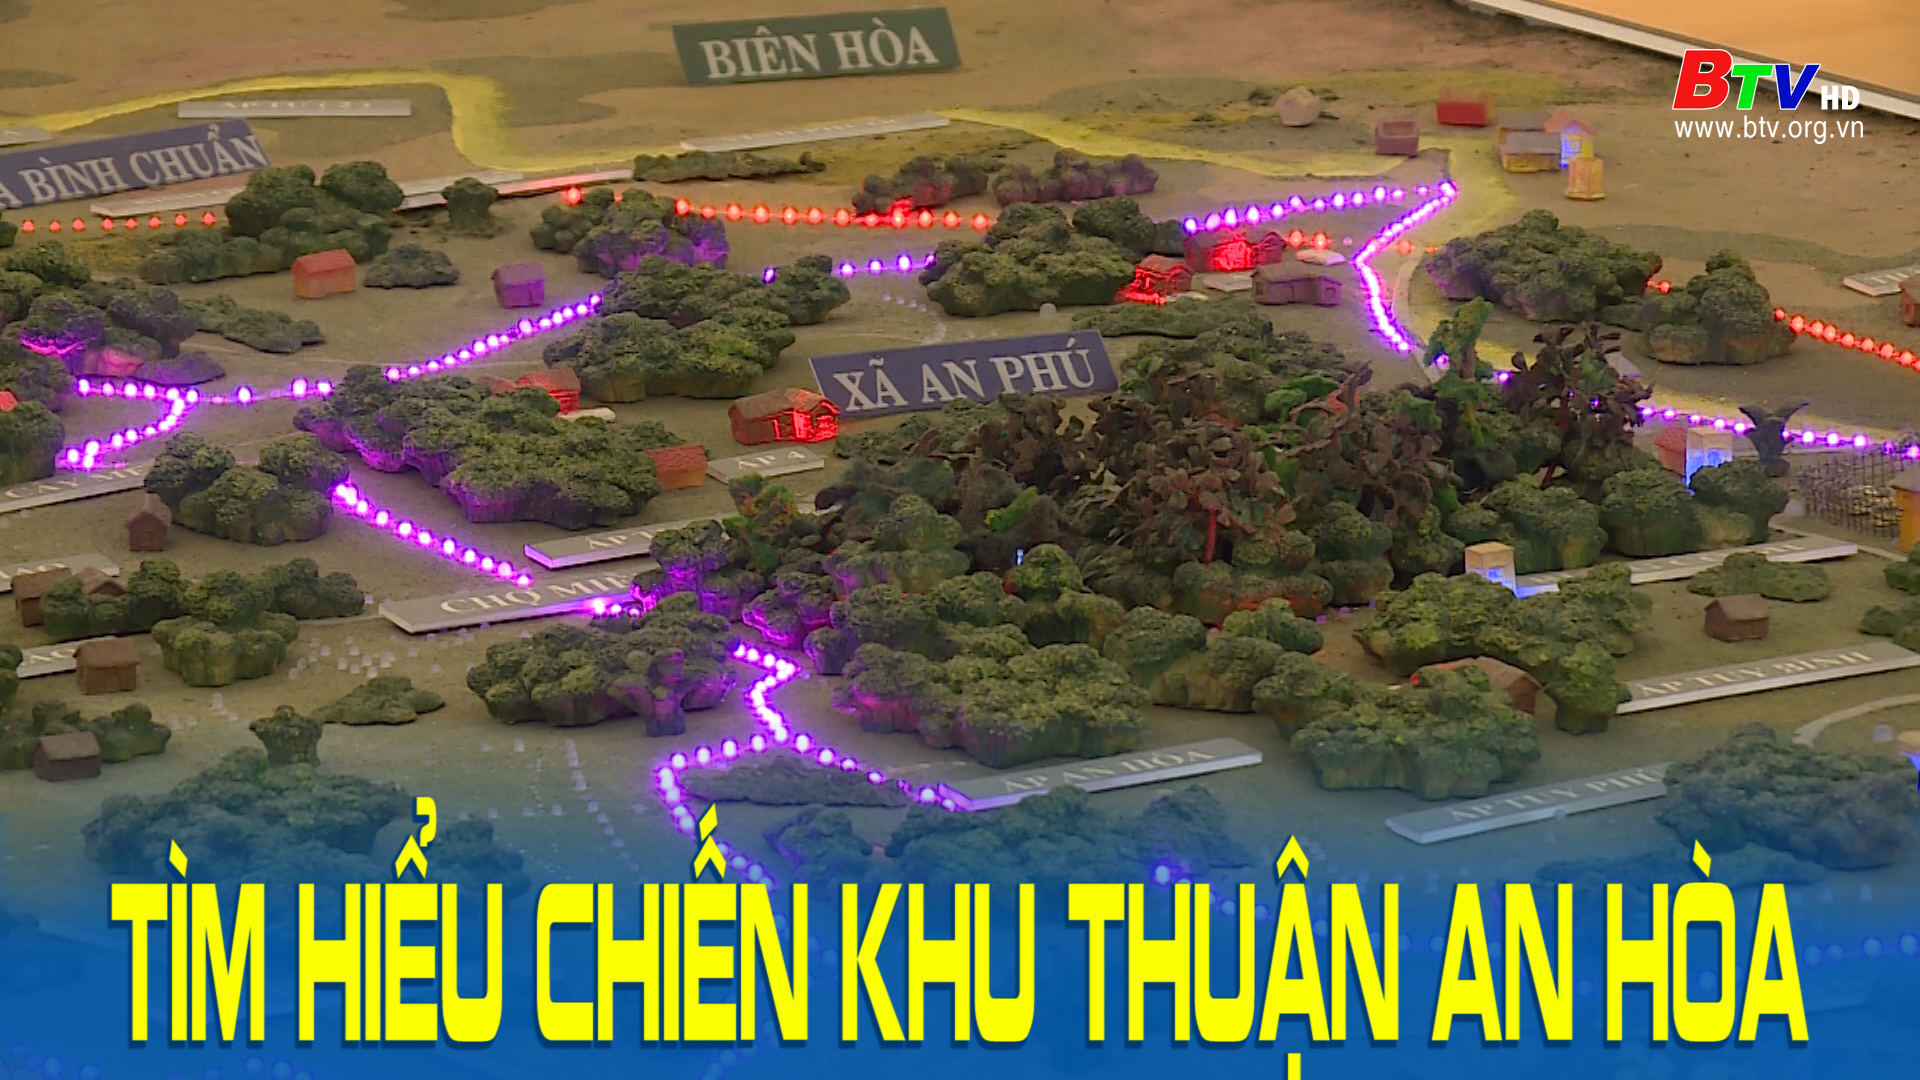 Tìm hiểu chiến khu Thuận An Hòa